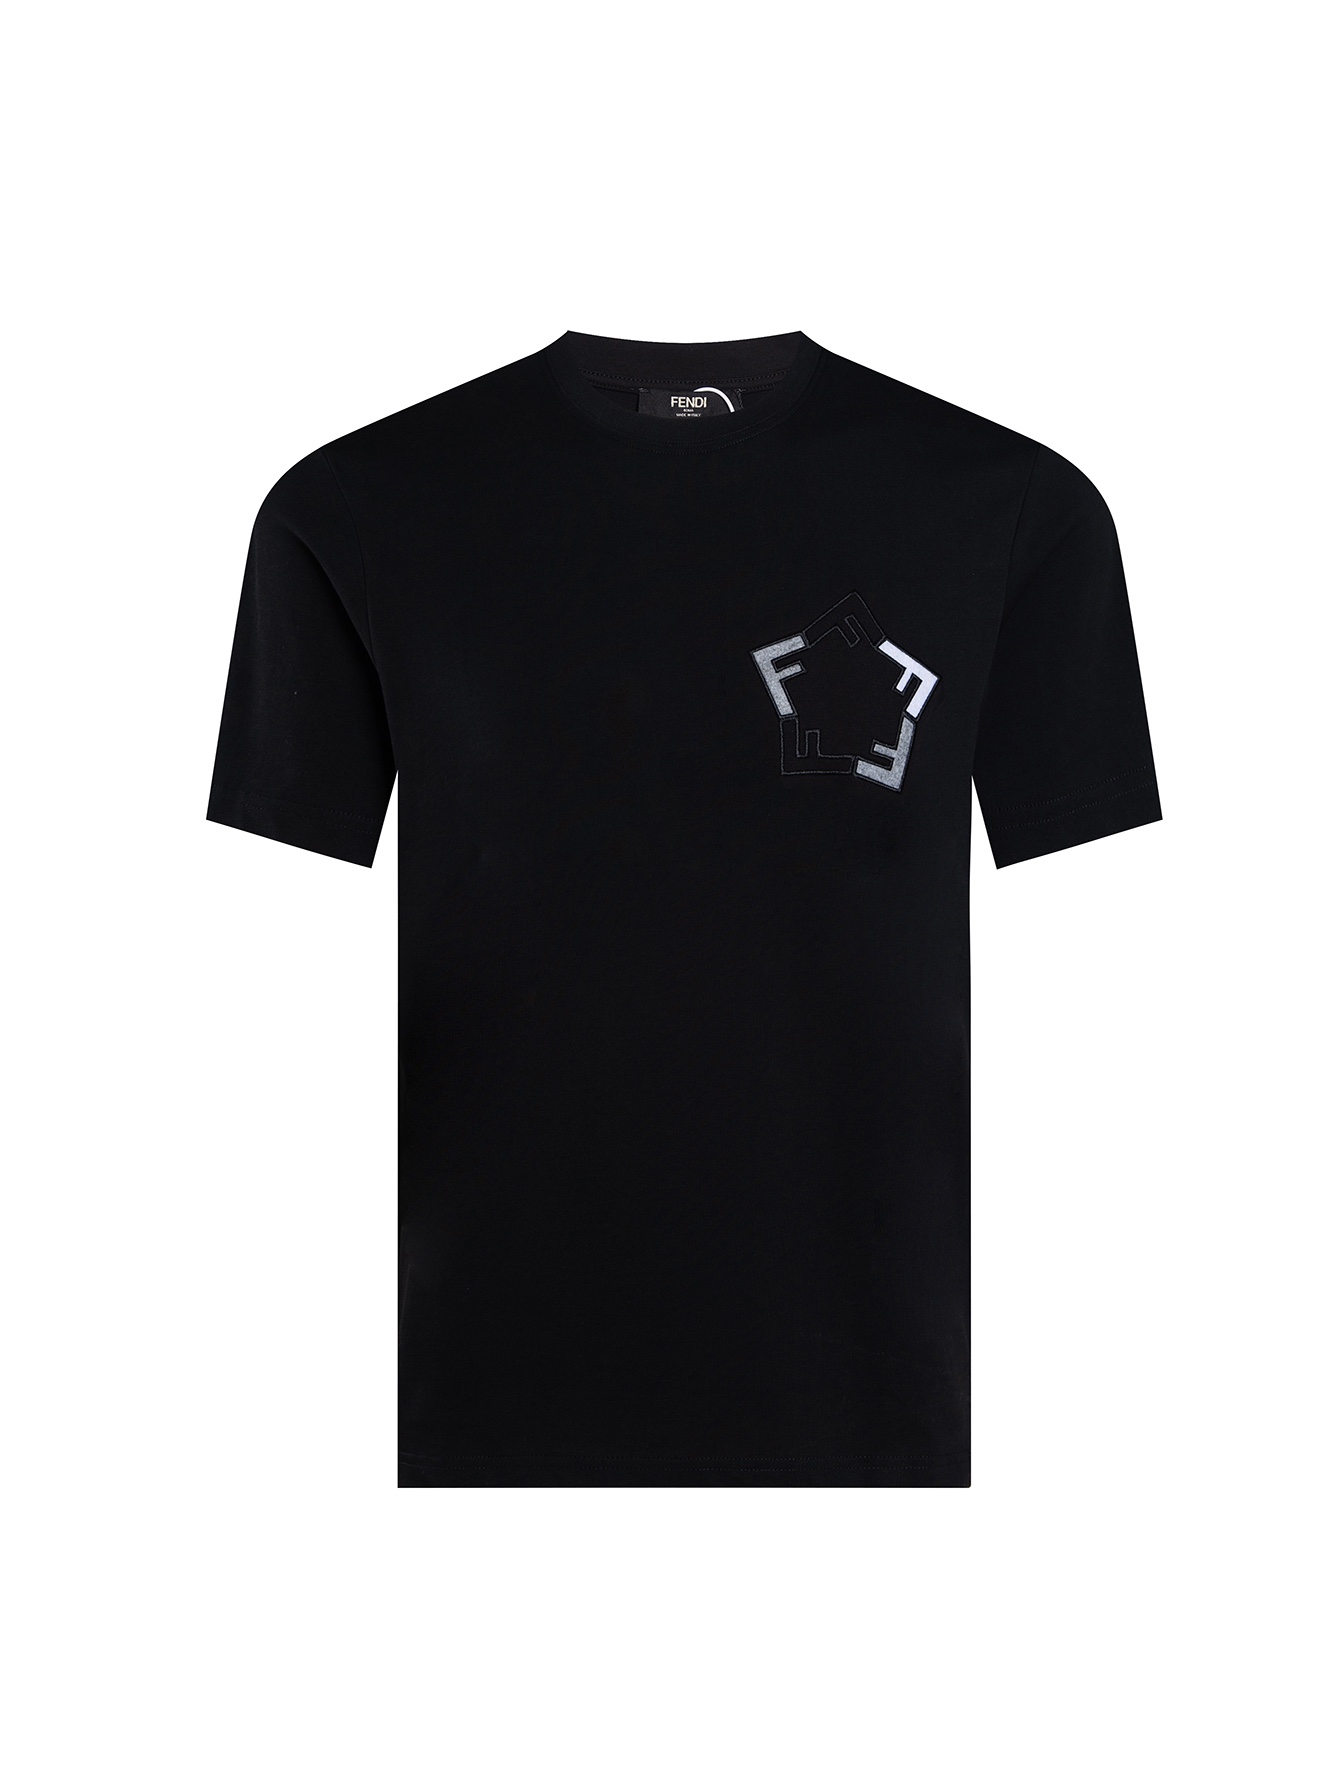 フェンディ ワイシャツスーパーコピー トップス 綿100% 短袖 Tシャツ 男女兼用 シンプル ファッション ブラック_1